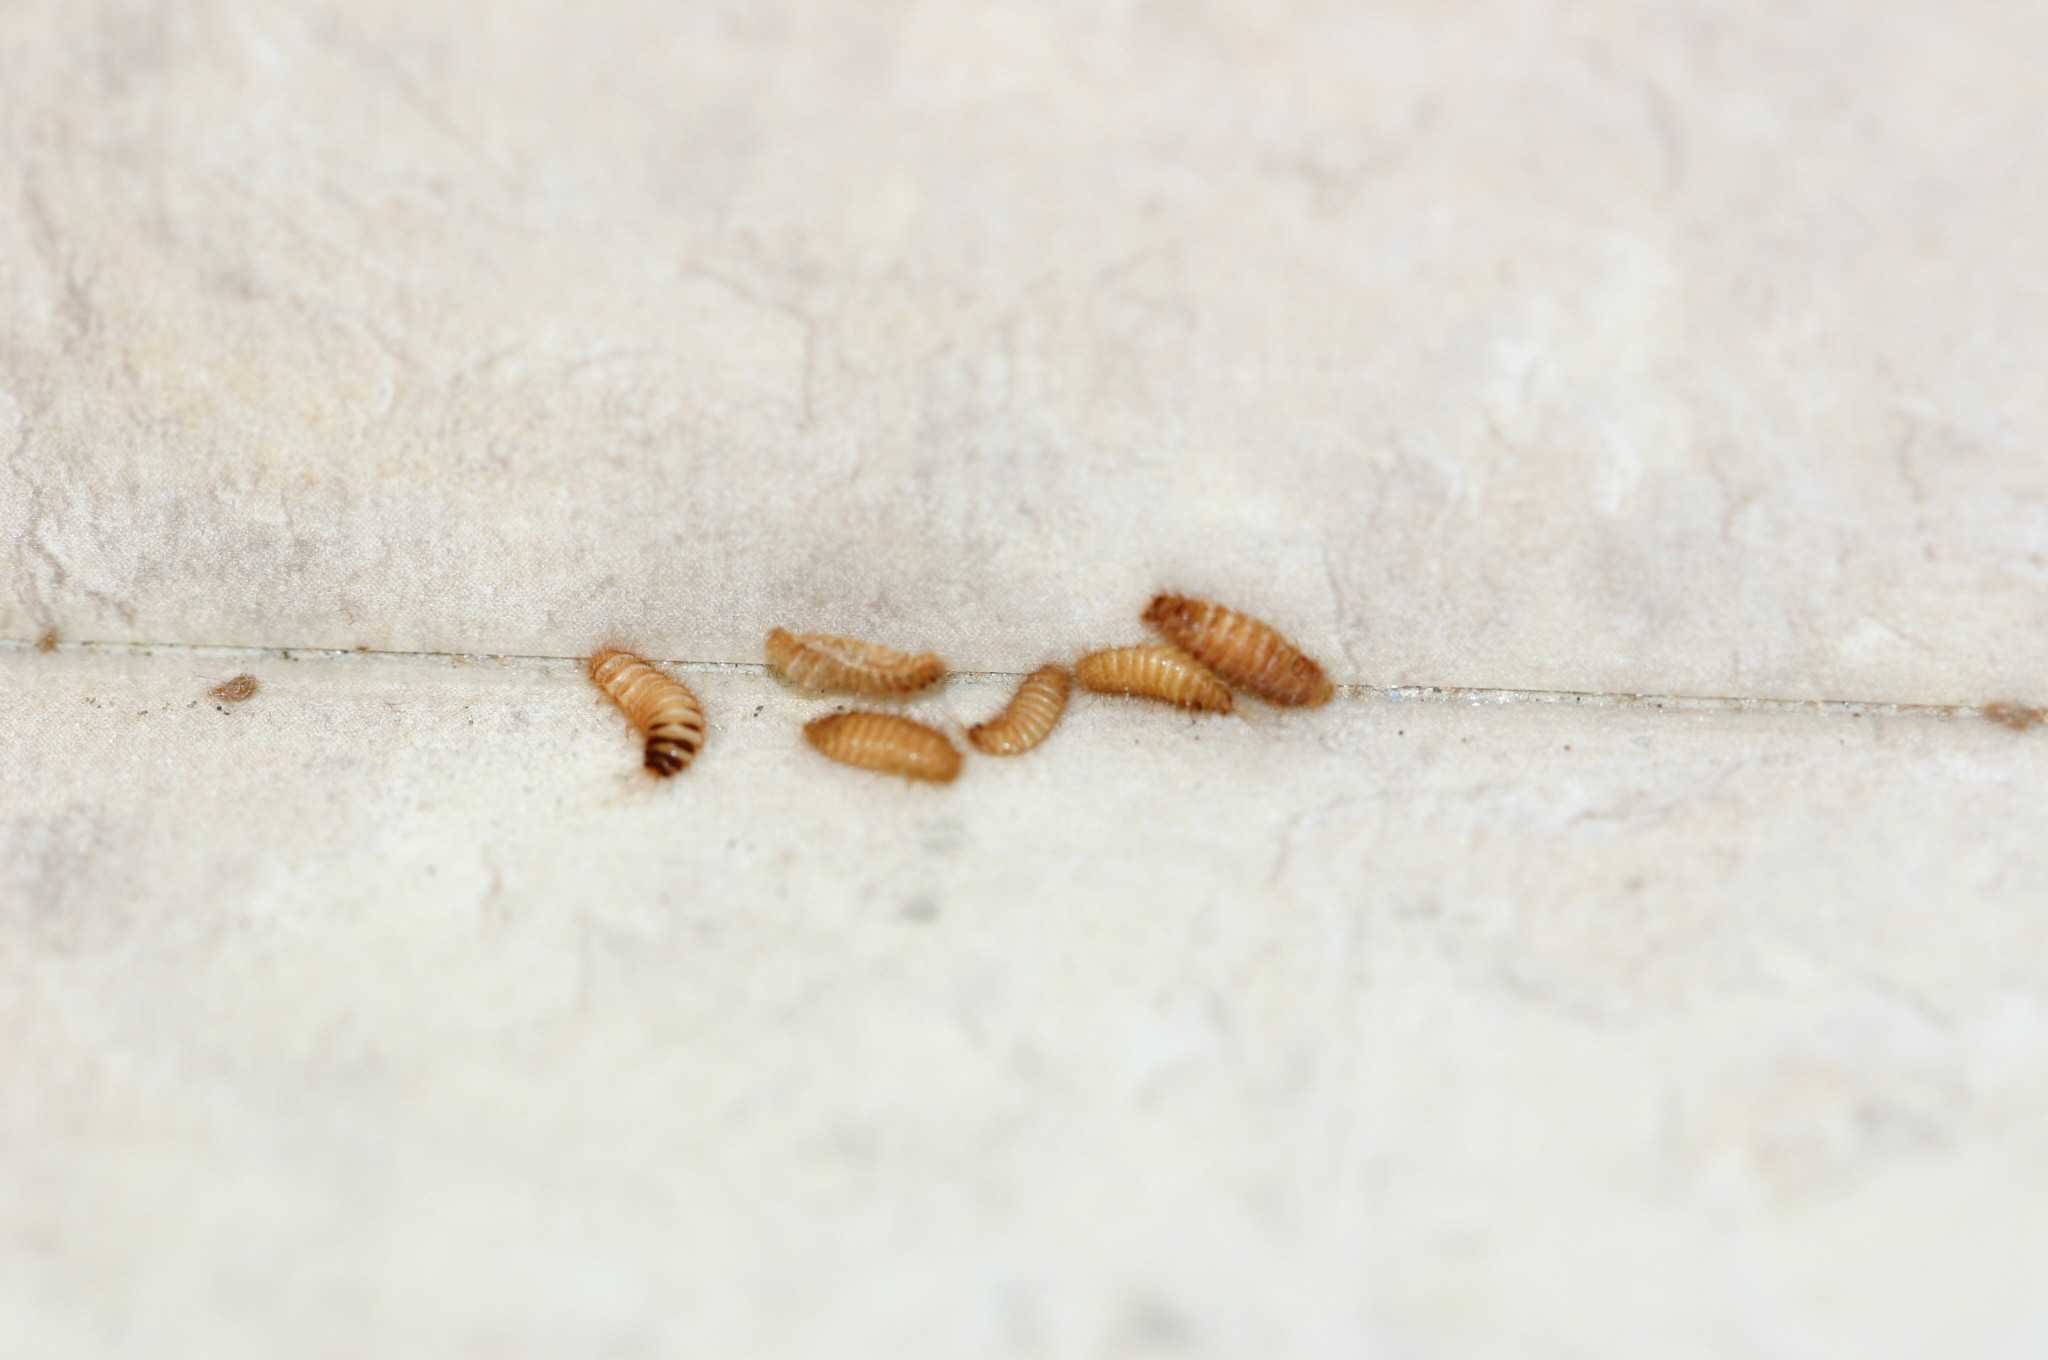 Carpet Beetle Larvae In Bed